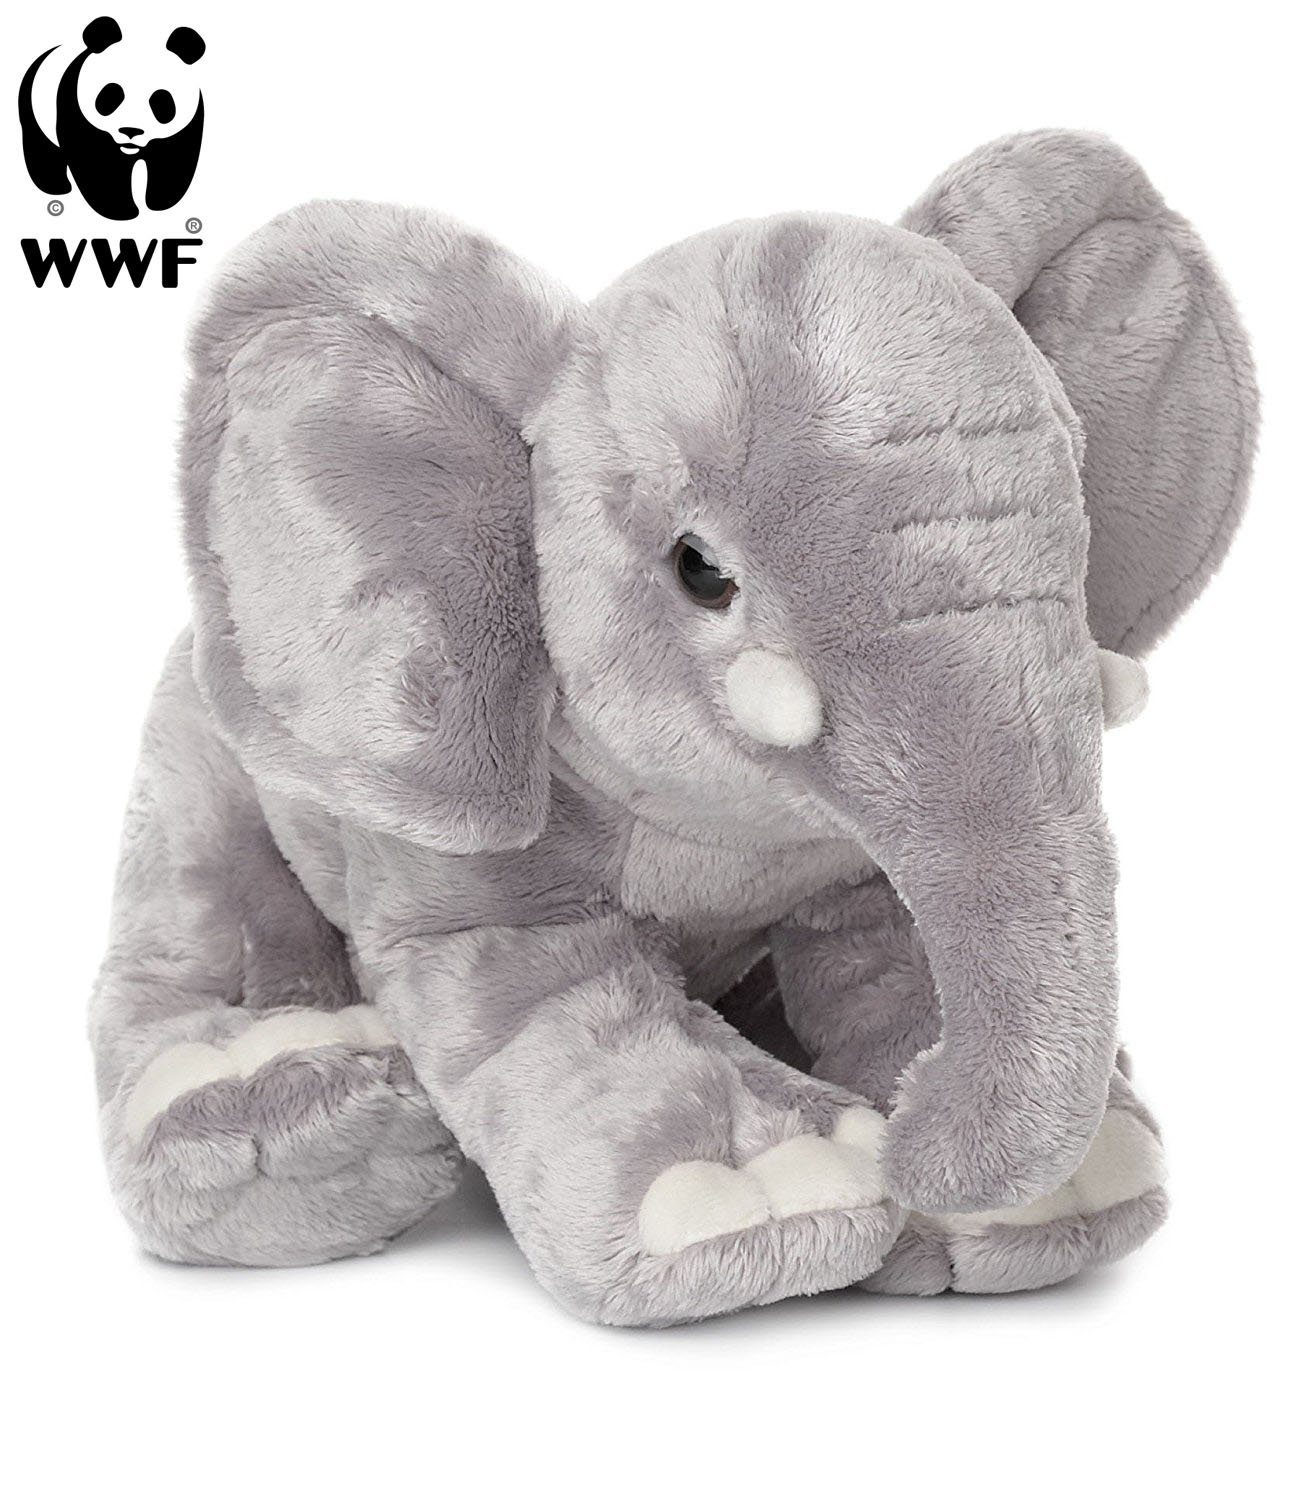 WWF Kuscheltier Plüschtier Elefant (Rüssel runter, 18cm)